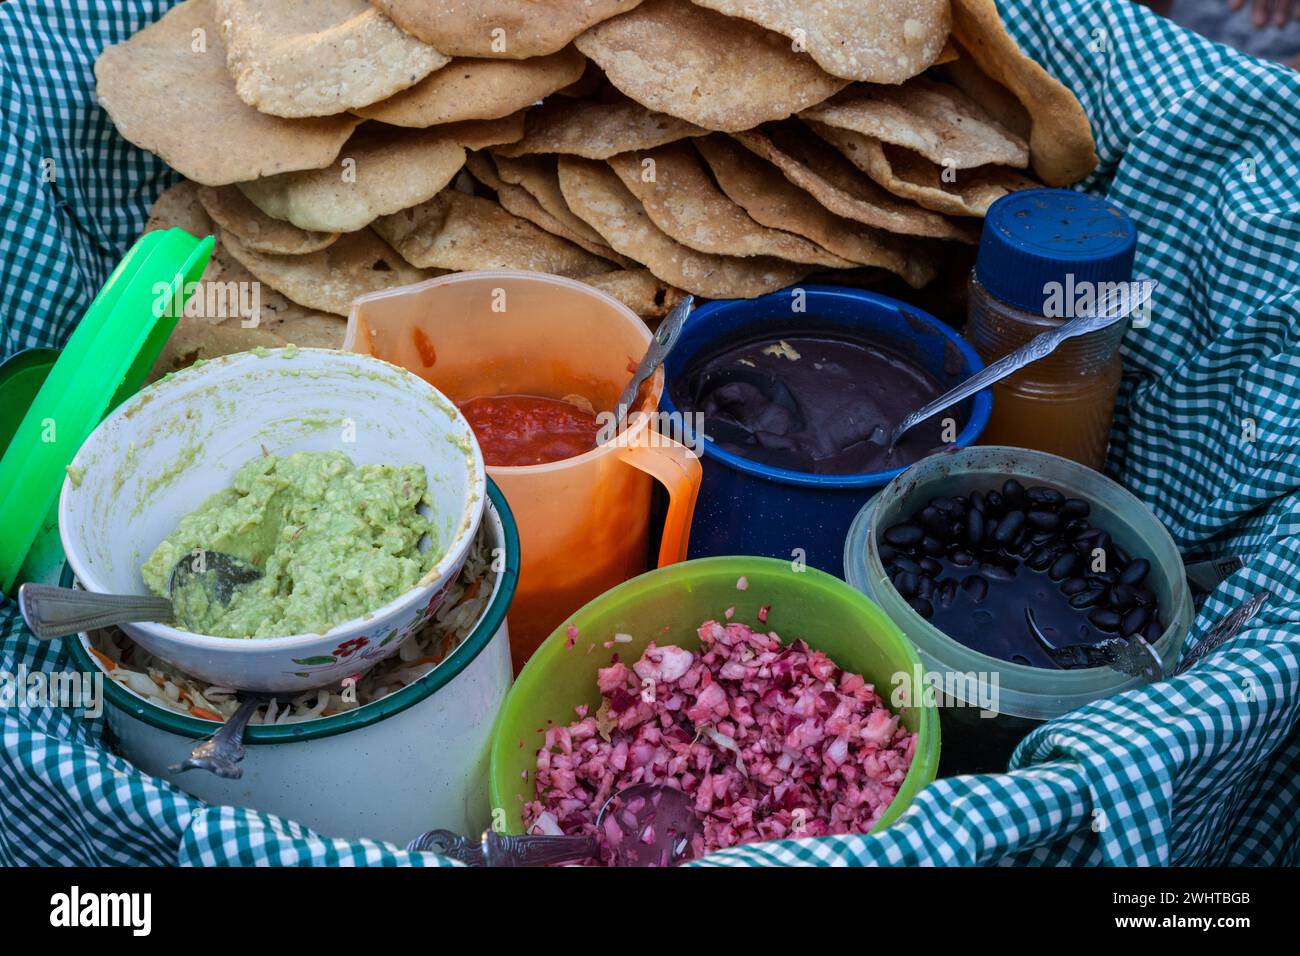 Antigua, Guatemala. Plateau à collation du vendeur de rue : guacamole, haricots, oignons, sauce chaude, tortillas. Banque D'Images